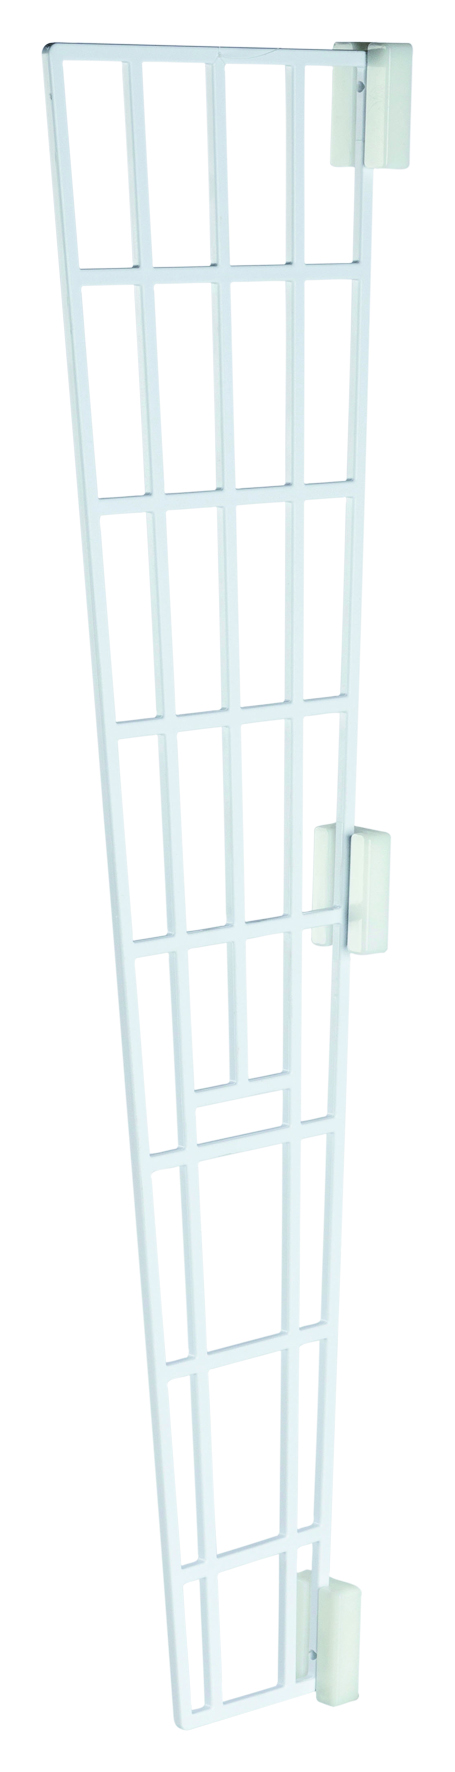 Schutzgitter für Fenster, Seitenteil, 62 x 16/7 cm, weiß